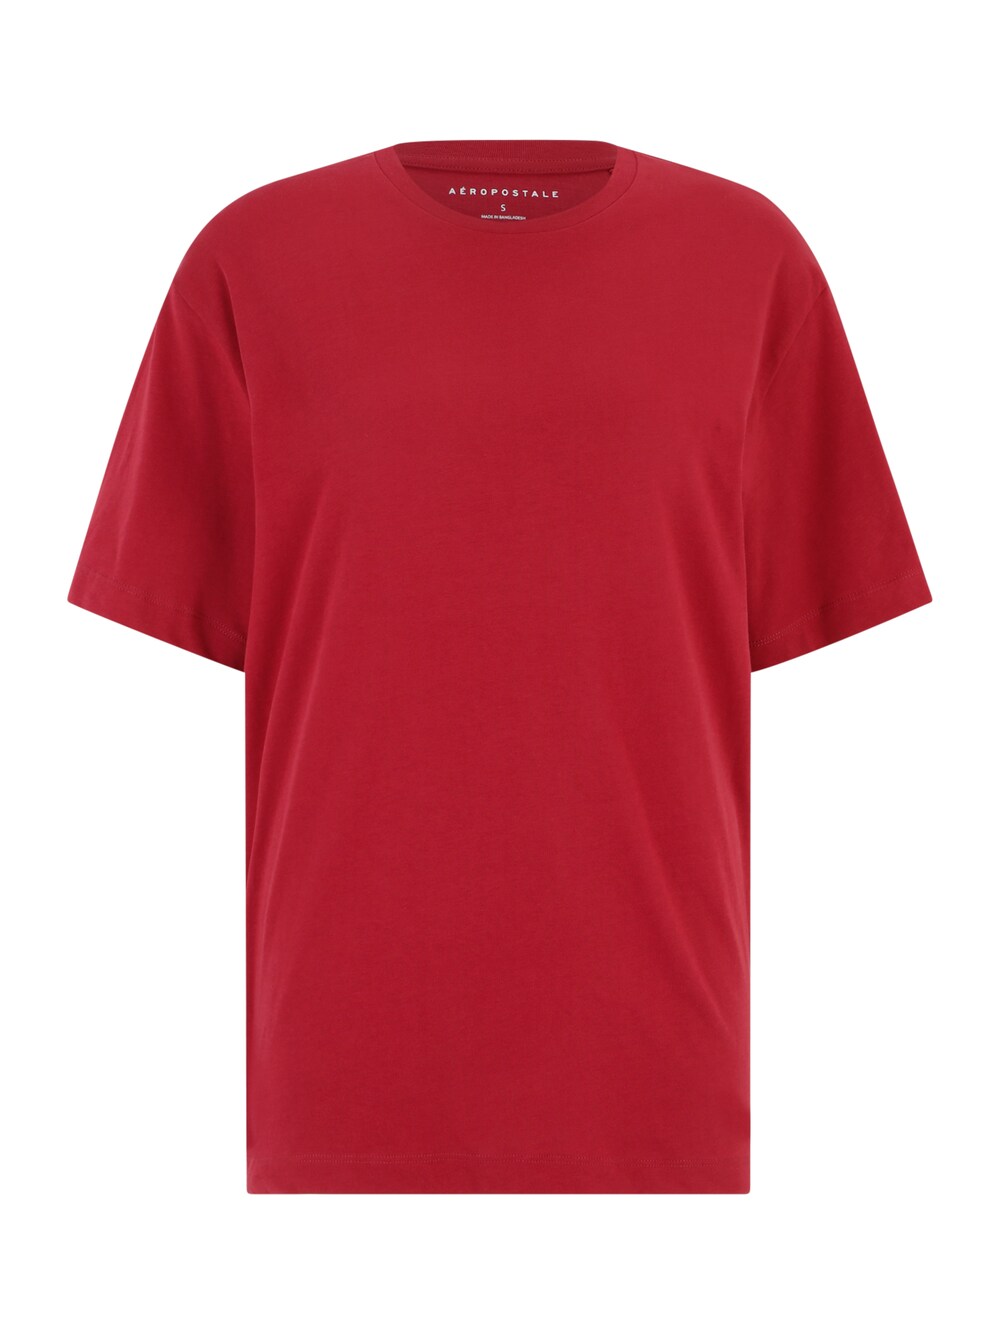 Рубашка Aéropostale, красный Aeropostale